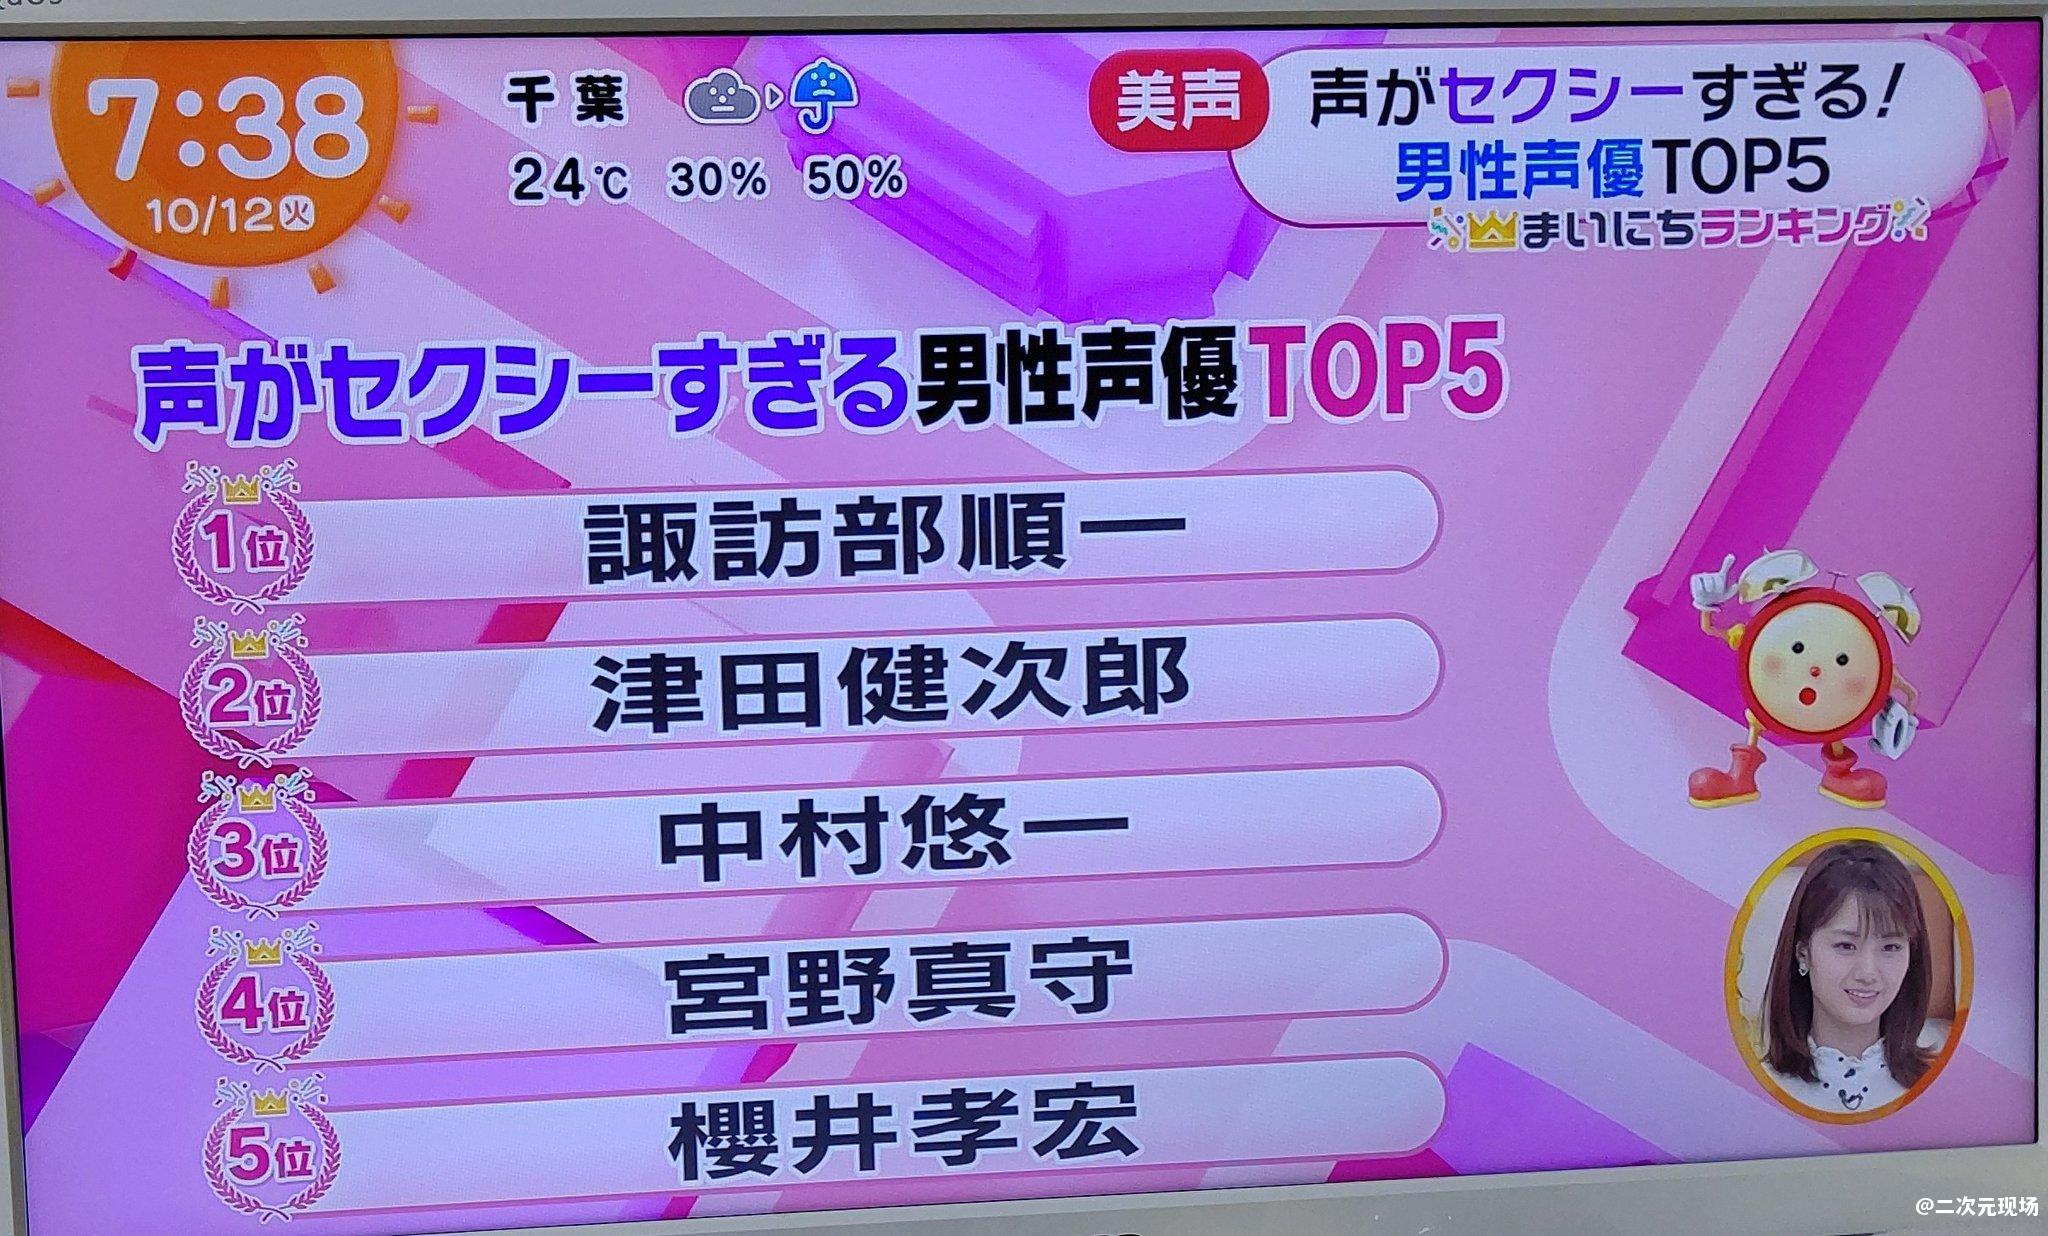 日媒评选性感声线男声优TOP5 第一位电视台脸都给